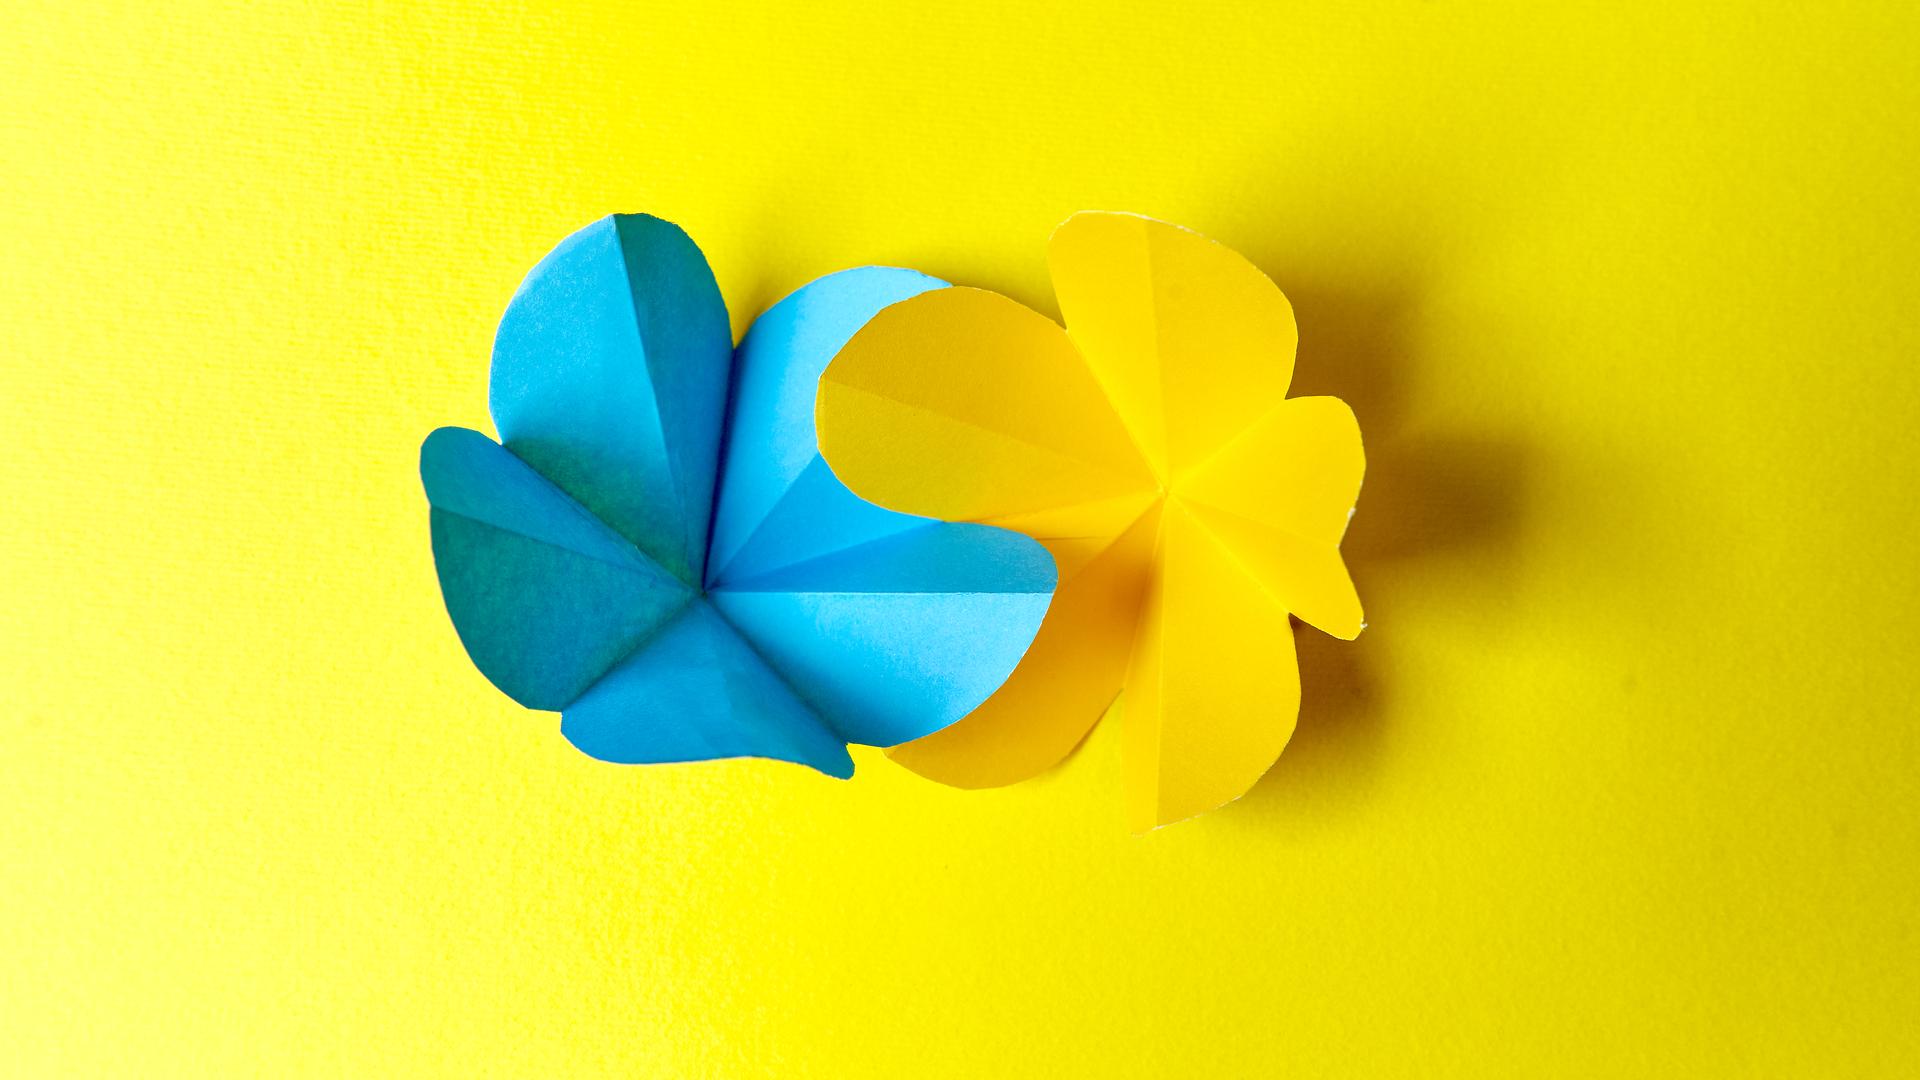 Zwei gefalte Papierblumen sind ineinandergeschoben. Sie sind blau und gelb. Der Hintergrund ist ebenfalls gelb.